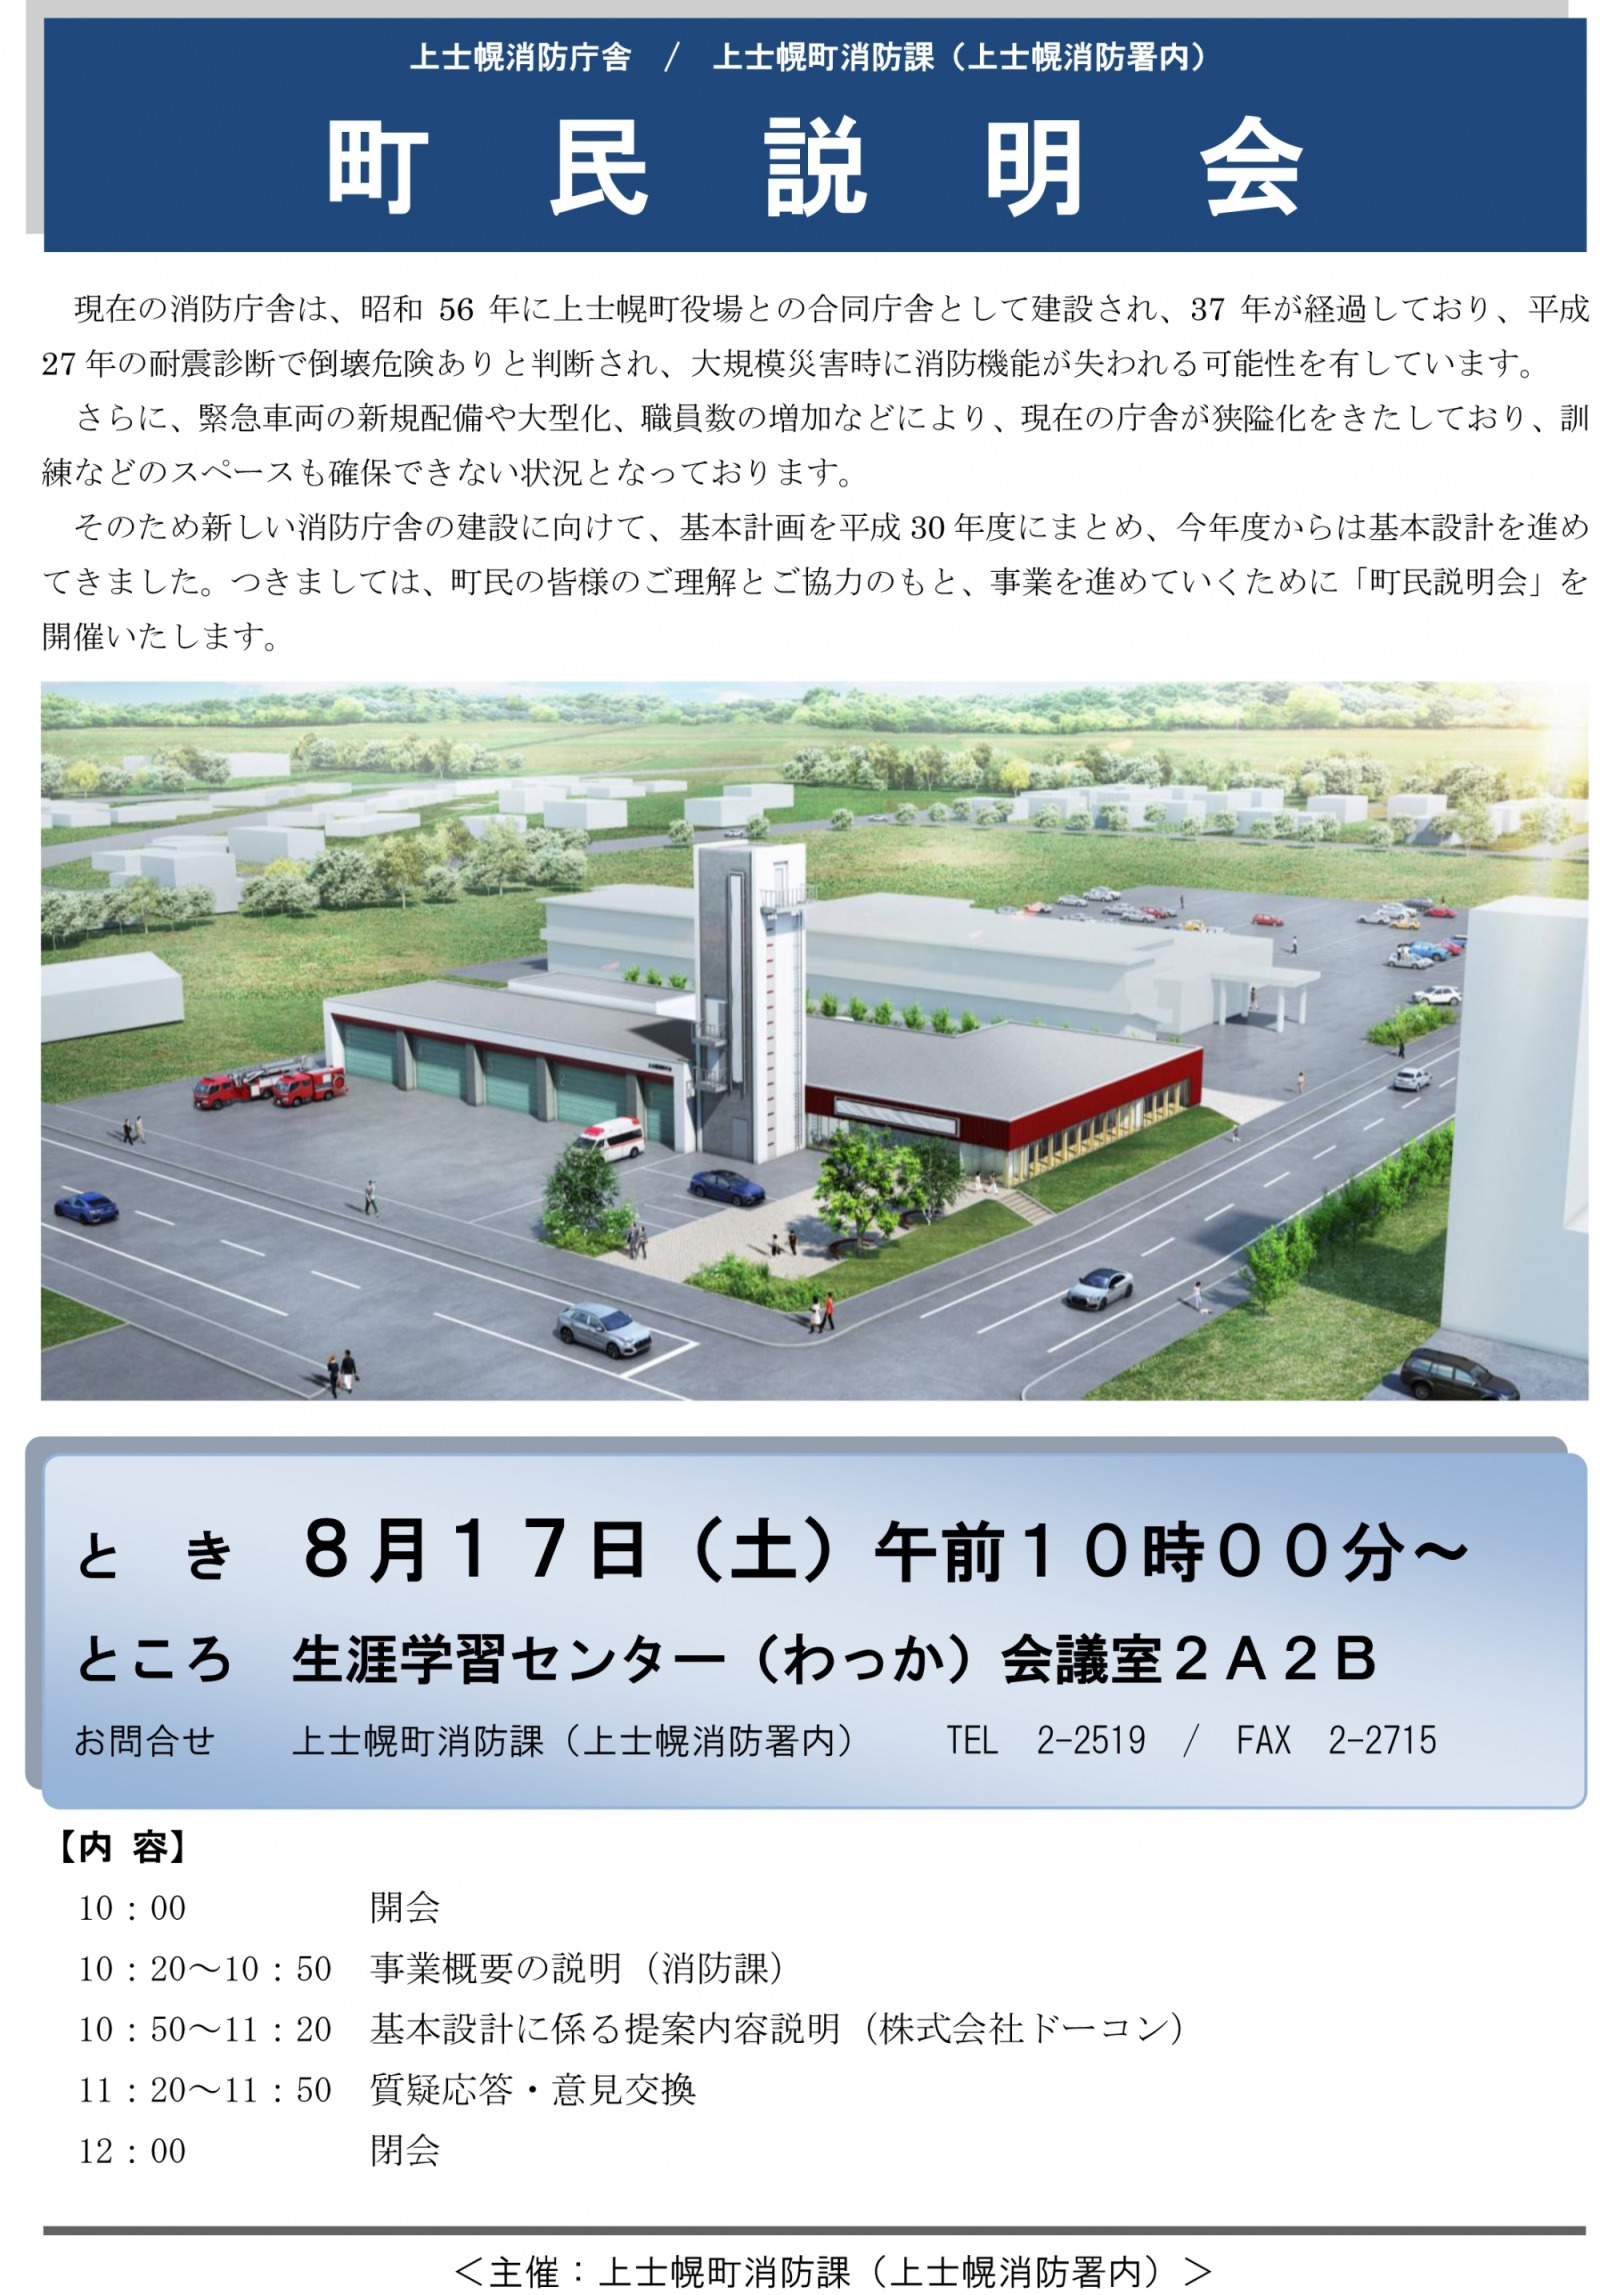 上士幌消防庁舎建設に伴う町民説明会を開催しますの画像